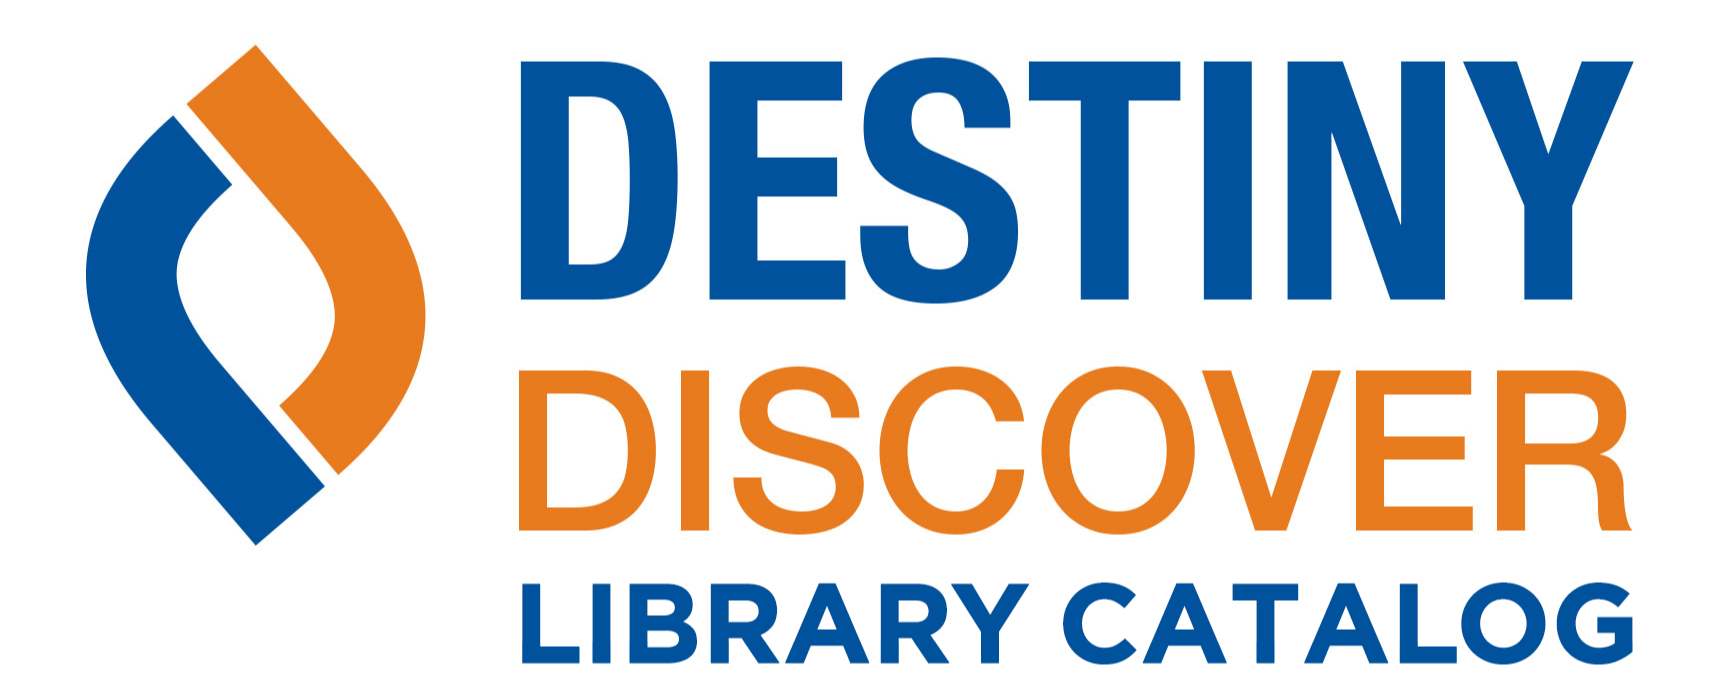 destiny discover catalog